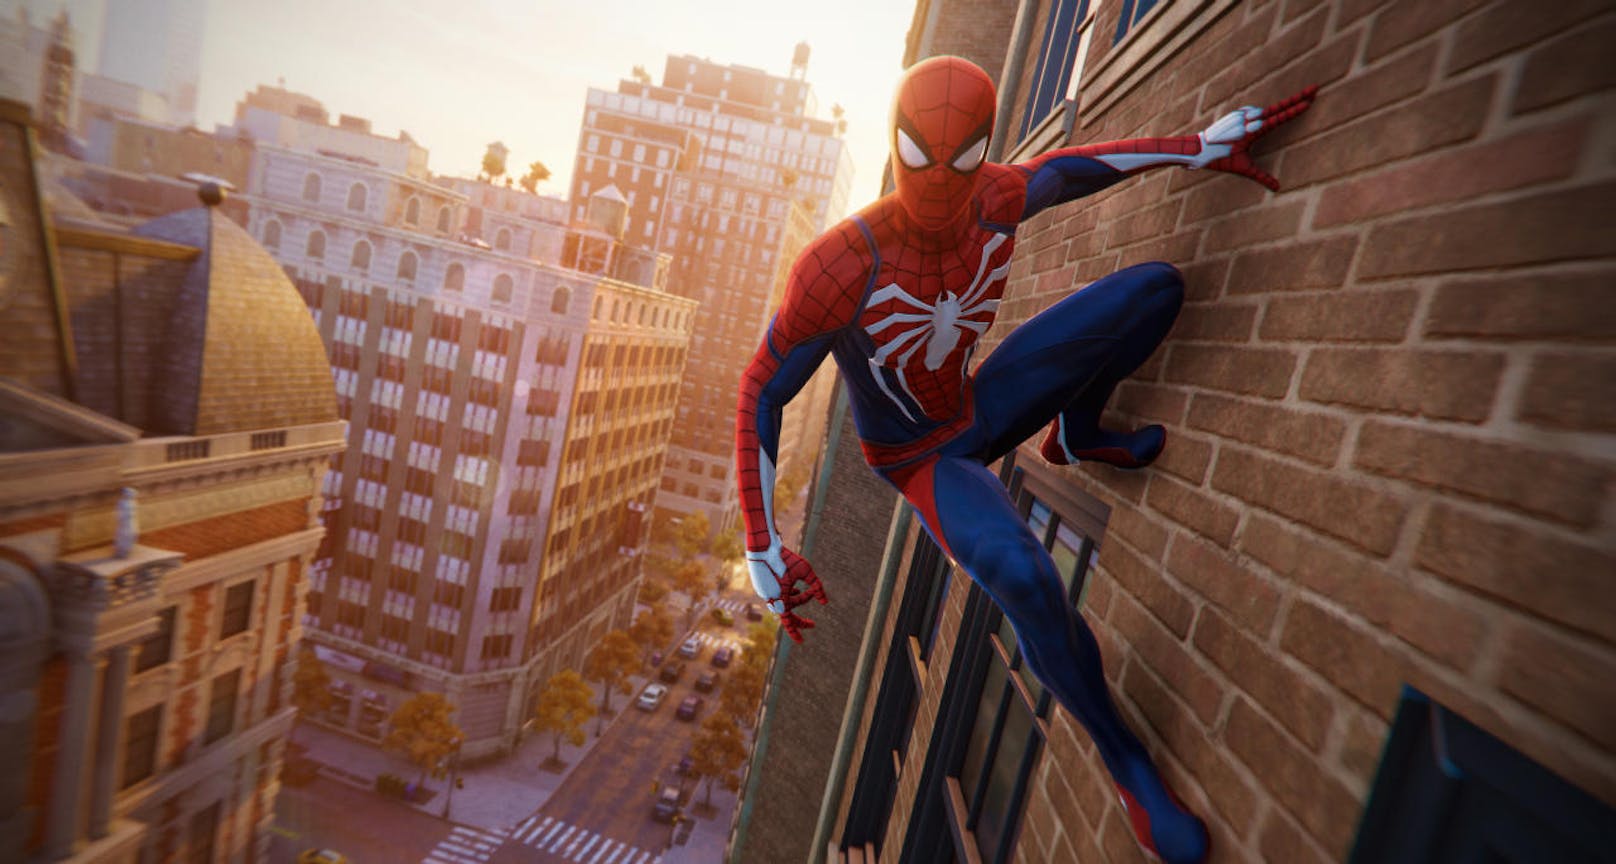 So startet Spider-Man aus der Sicht von Peter Parker, ohne dass der Spieler eine Sekunde verschnaufen kann. Der Kingpin alias Wilson Fisk soll festgenommen werden, also lässt Peter seine Zivilkluft und seine Verpflichtungen liegen und zieht sich die Spinnenmaske über.